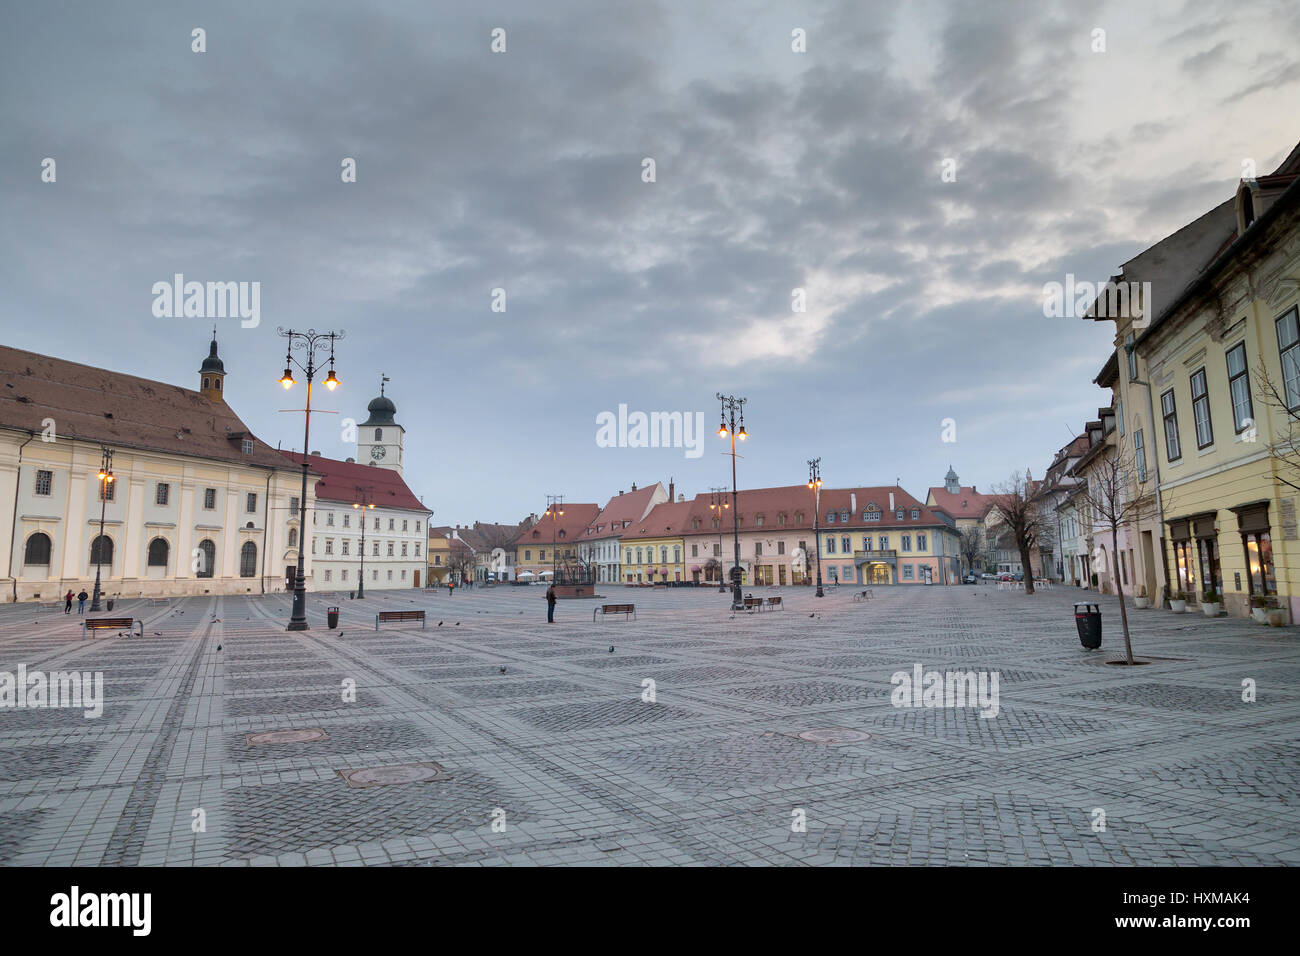 SIBIU ROUMANIE, vue de la vieille ville de Sibiu townsquare Roumanie Banque D'Images